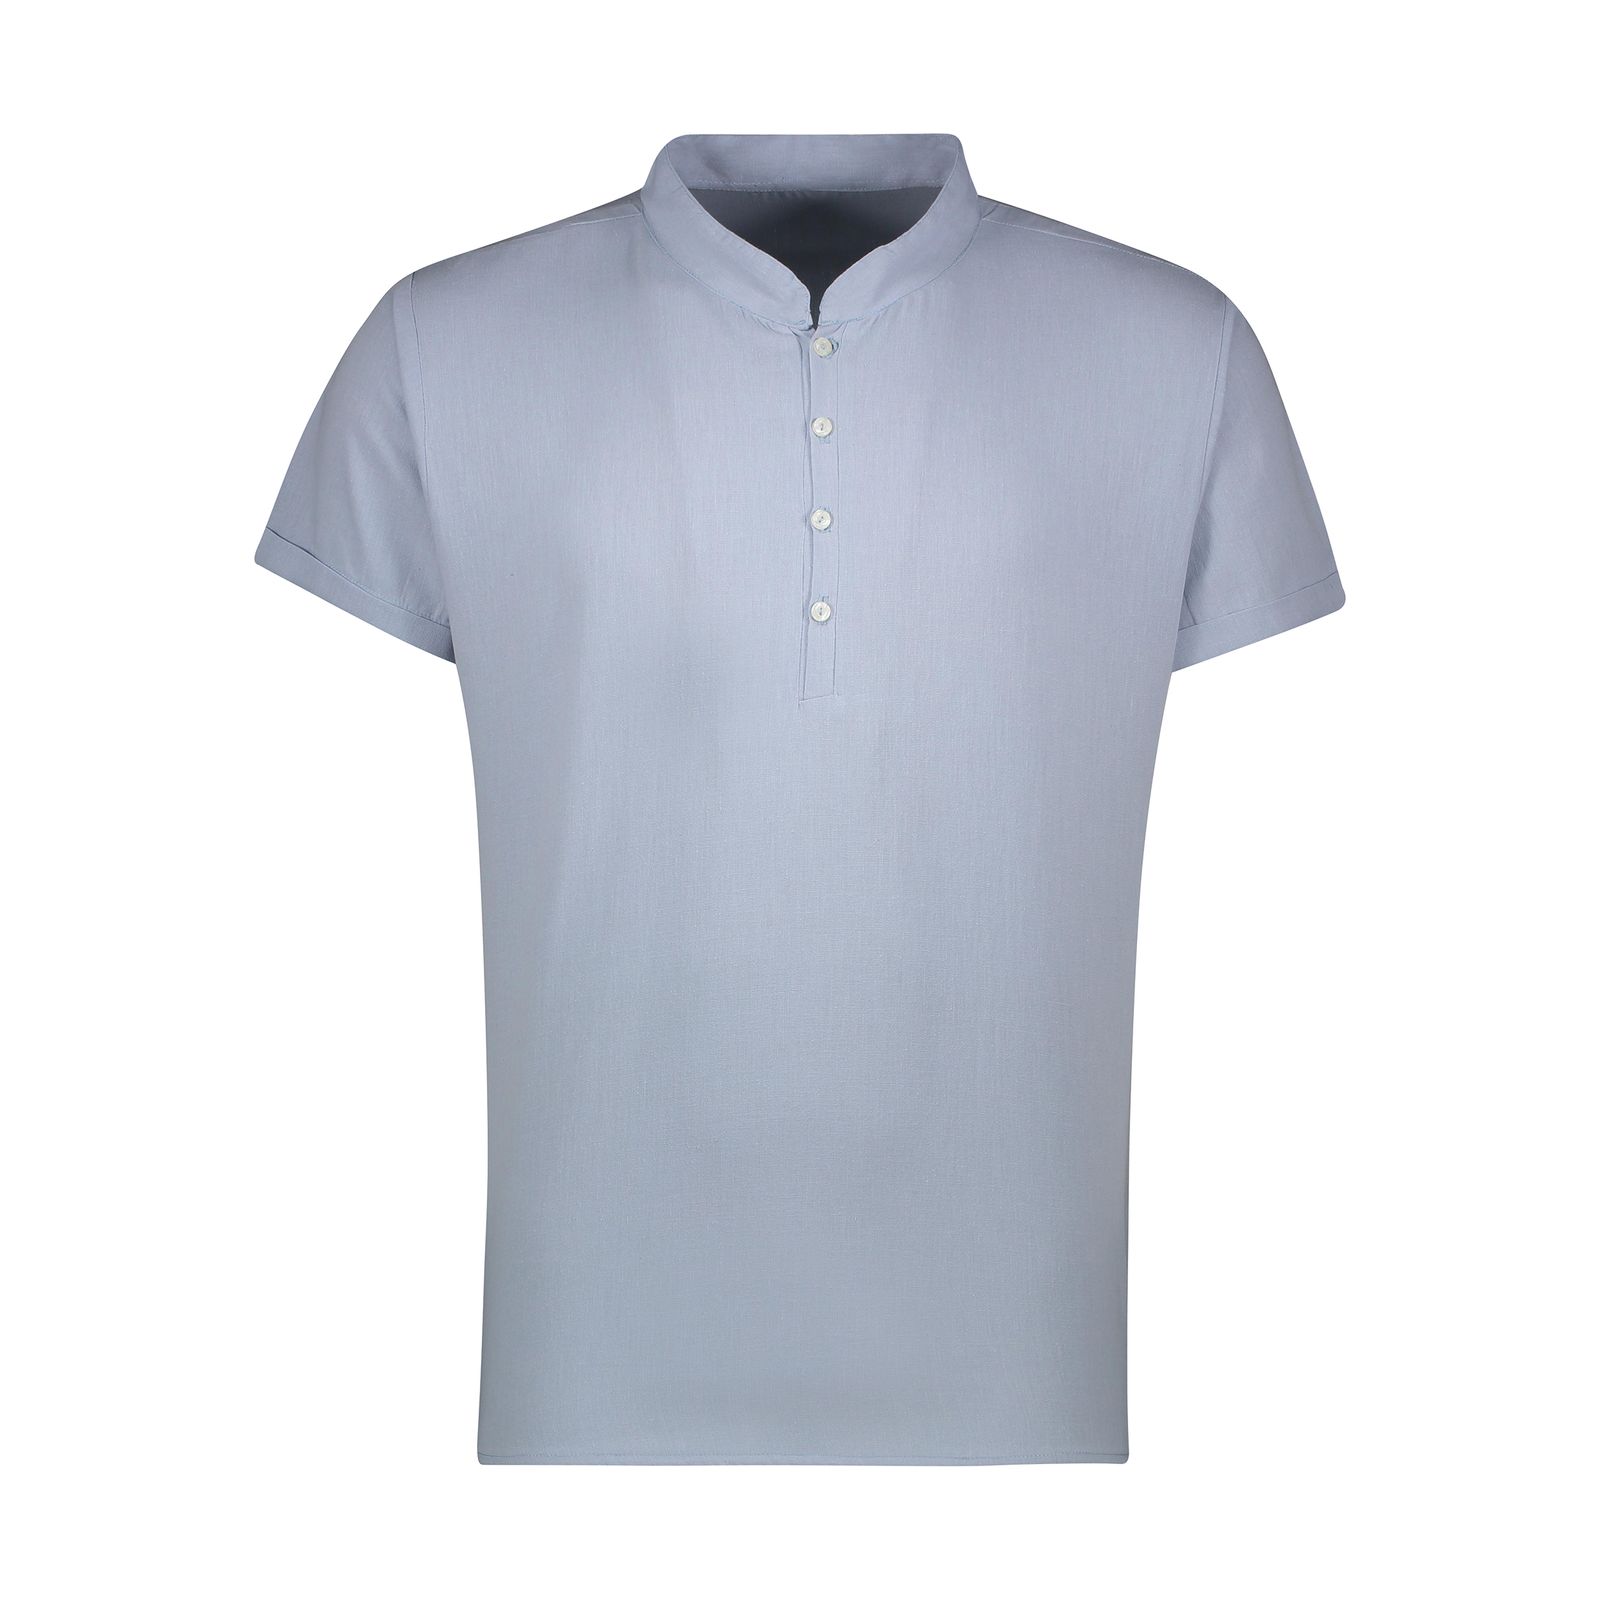 پیراهن آستین کوتاه مردانه افراتین مدل لینن رنگ آبی روشن -  - 1